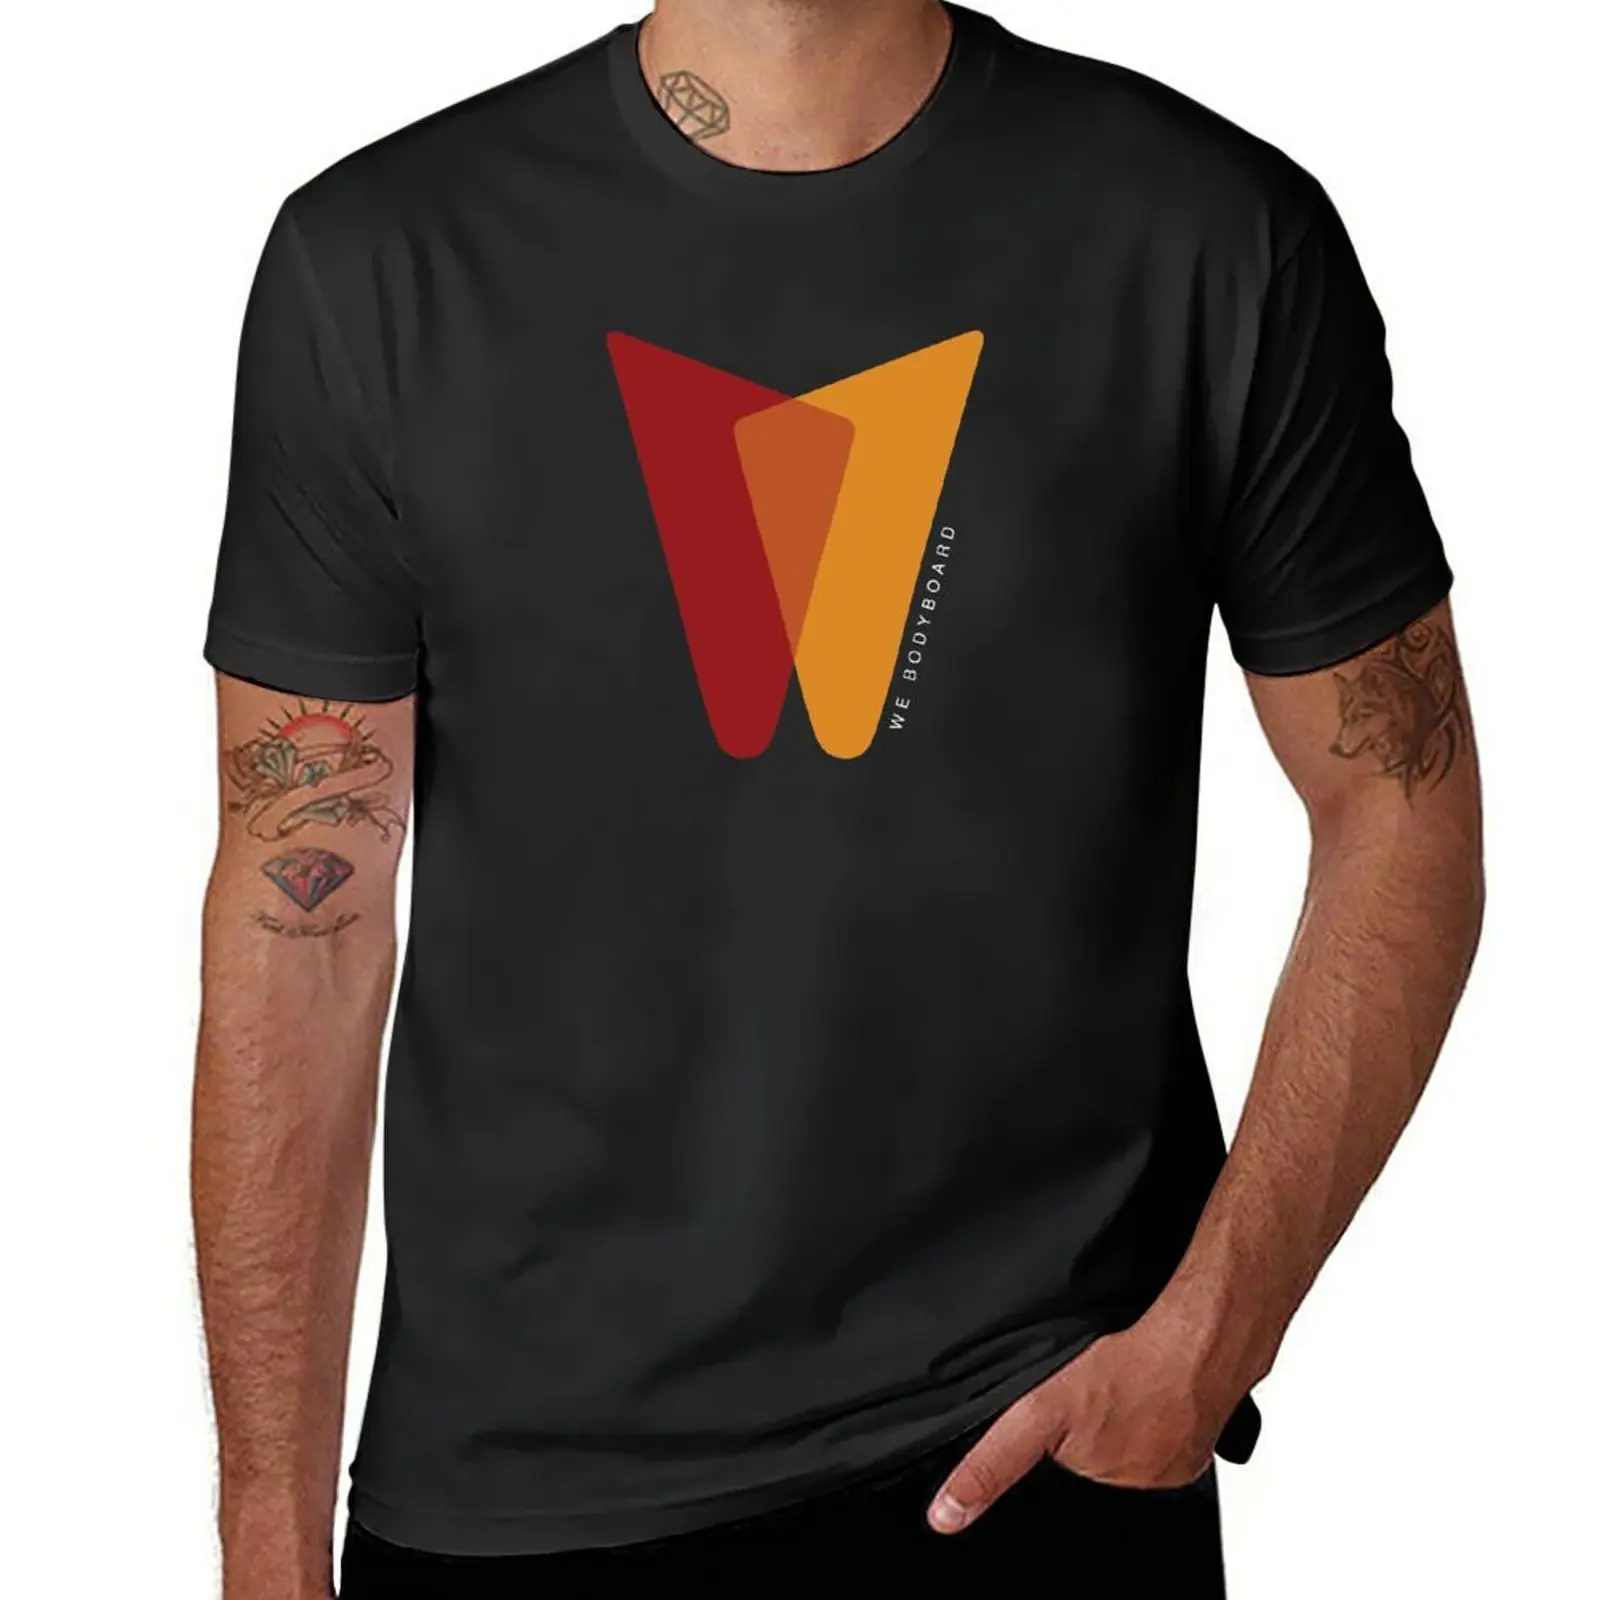 

Новинка We Bodyboard // логотип // Осенняя коллекция футболок черные футболки графическая футболка мужская одежда мужские футболки